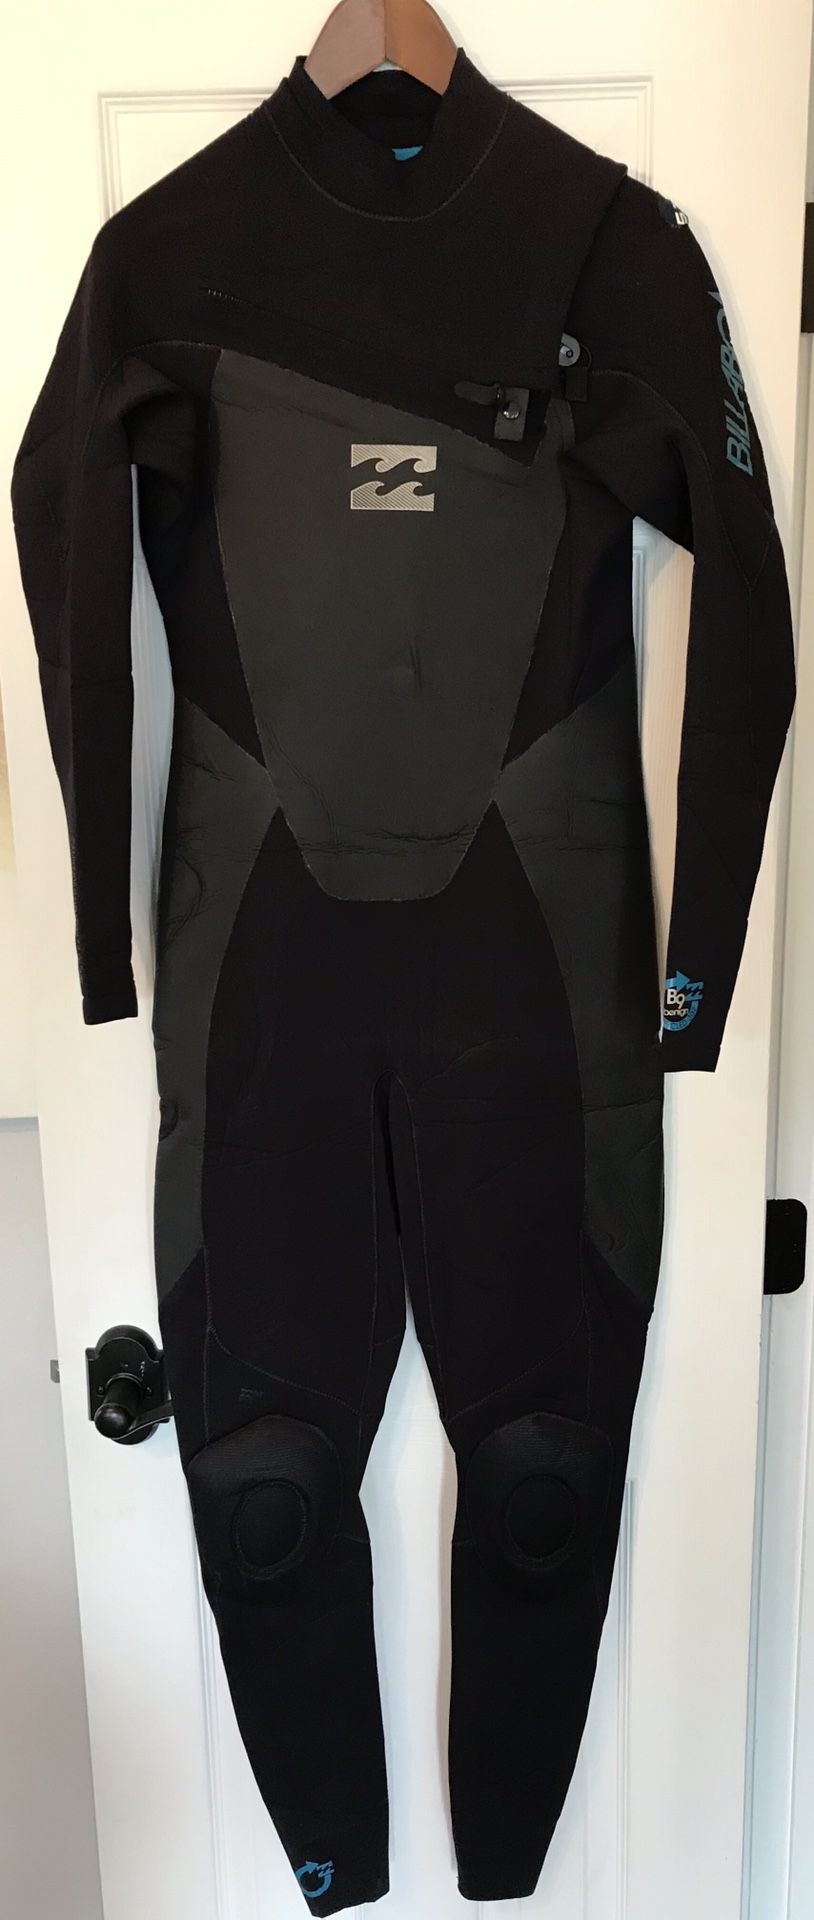 Billabong wetsuit